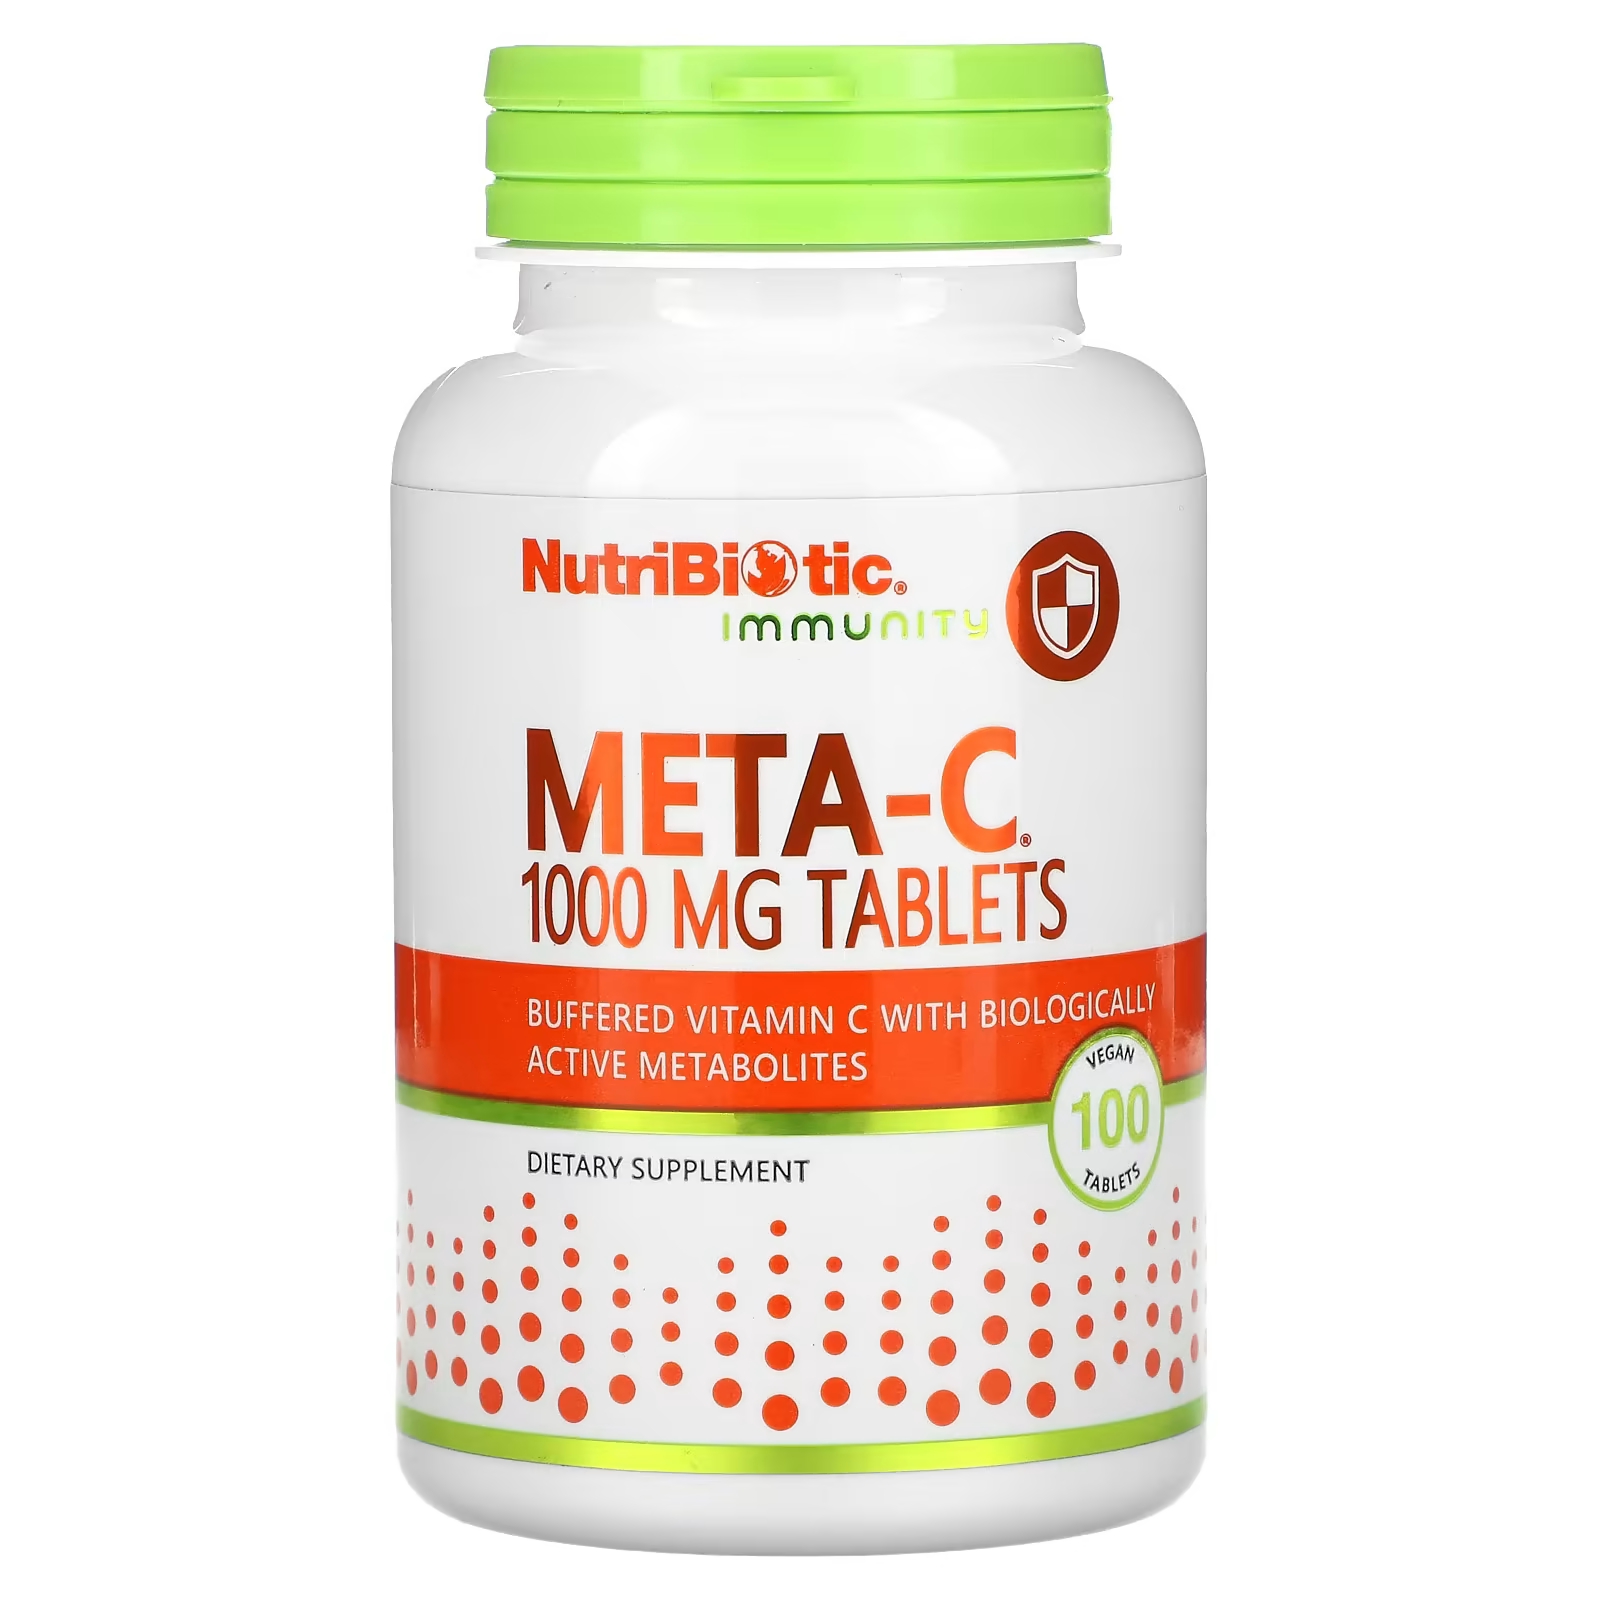 Пищевая добавка NutriBiotic Immunity Meta-C 1000 мг, 100 веганских таблеток nutribiotic immunity meta c 1000 мг 100 веганских таблеток